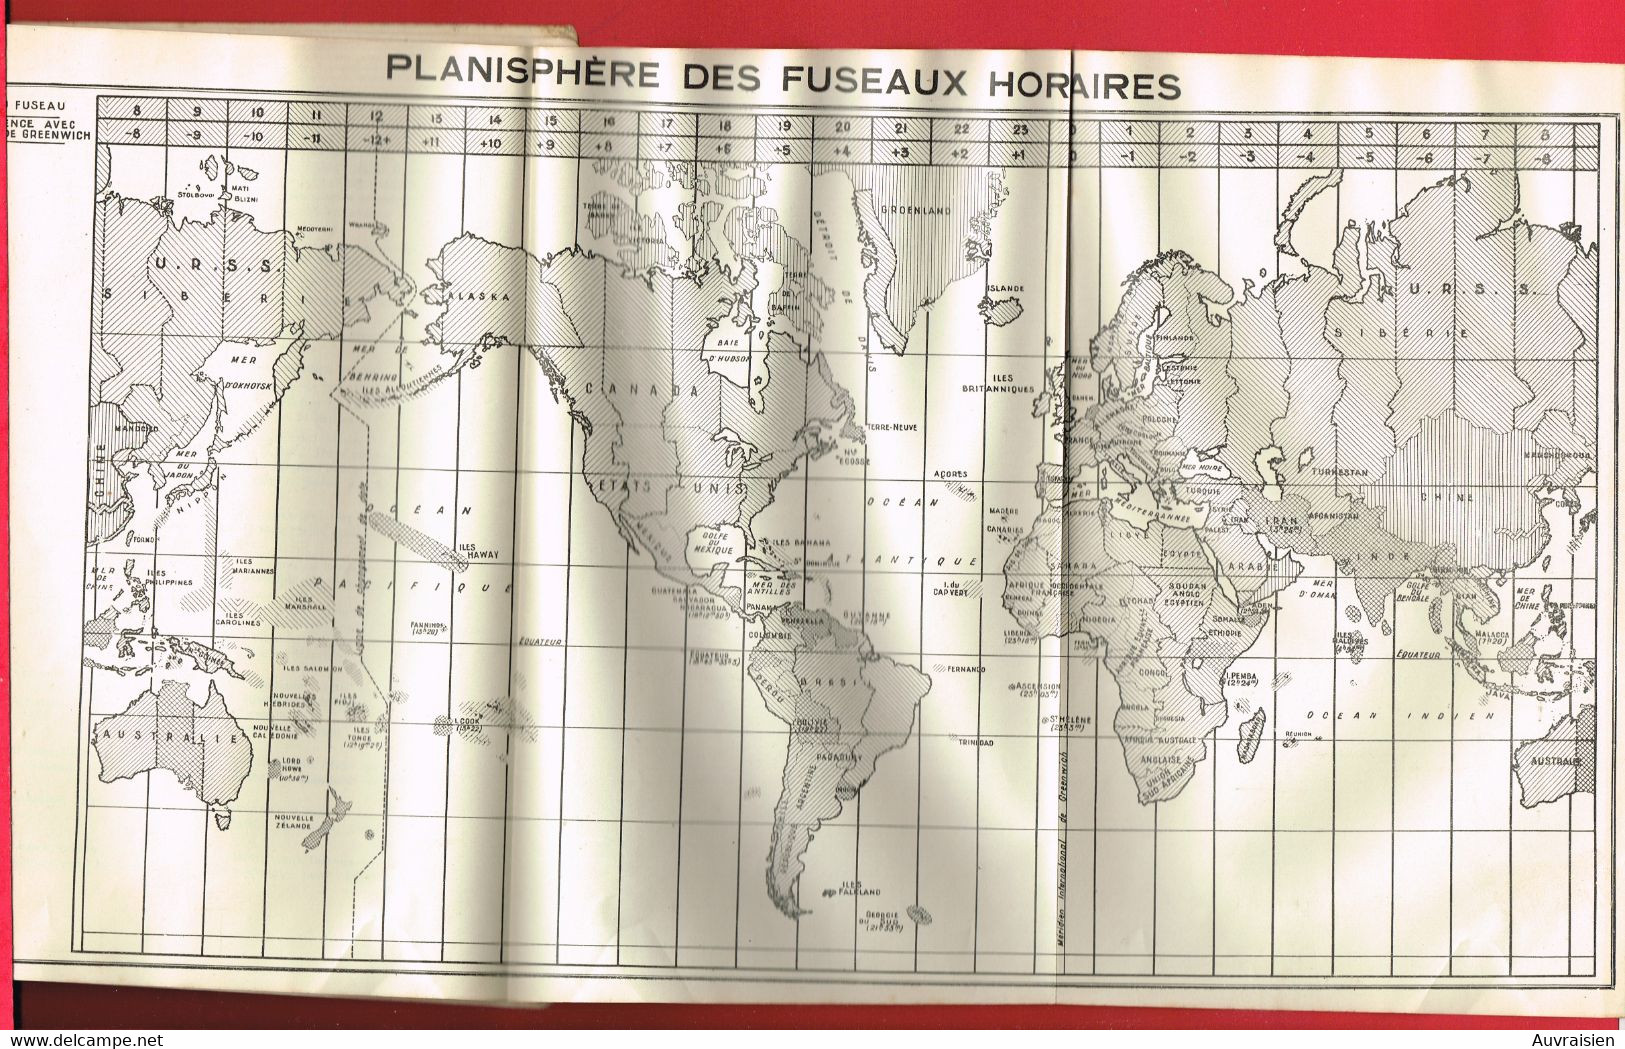 1 Plaquette  TSF Le Trafic D'Amateur Sur  Ondes Courtes Librairie De La Radio 1938 Edouart CLIQUET - Literatur & Schaltpläne